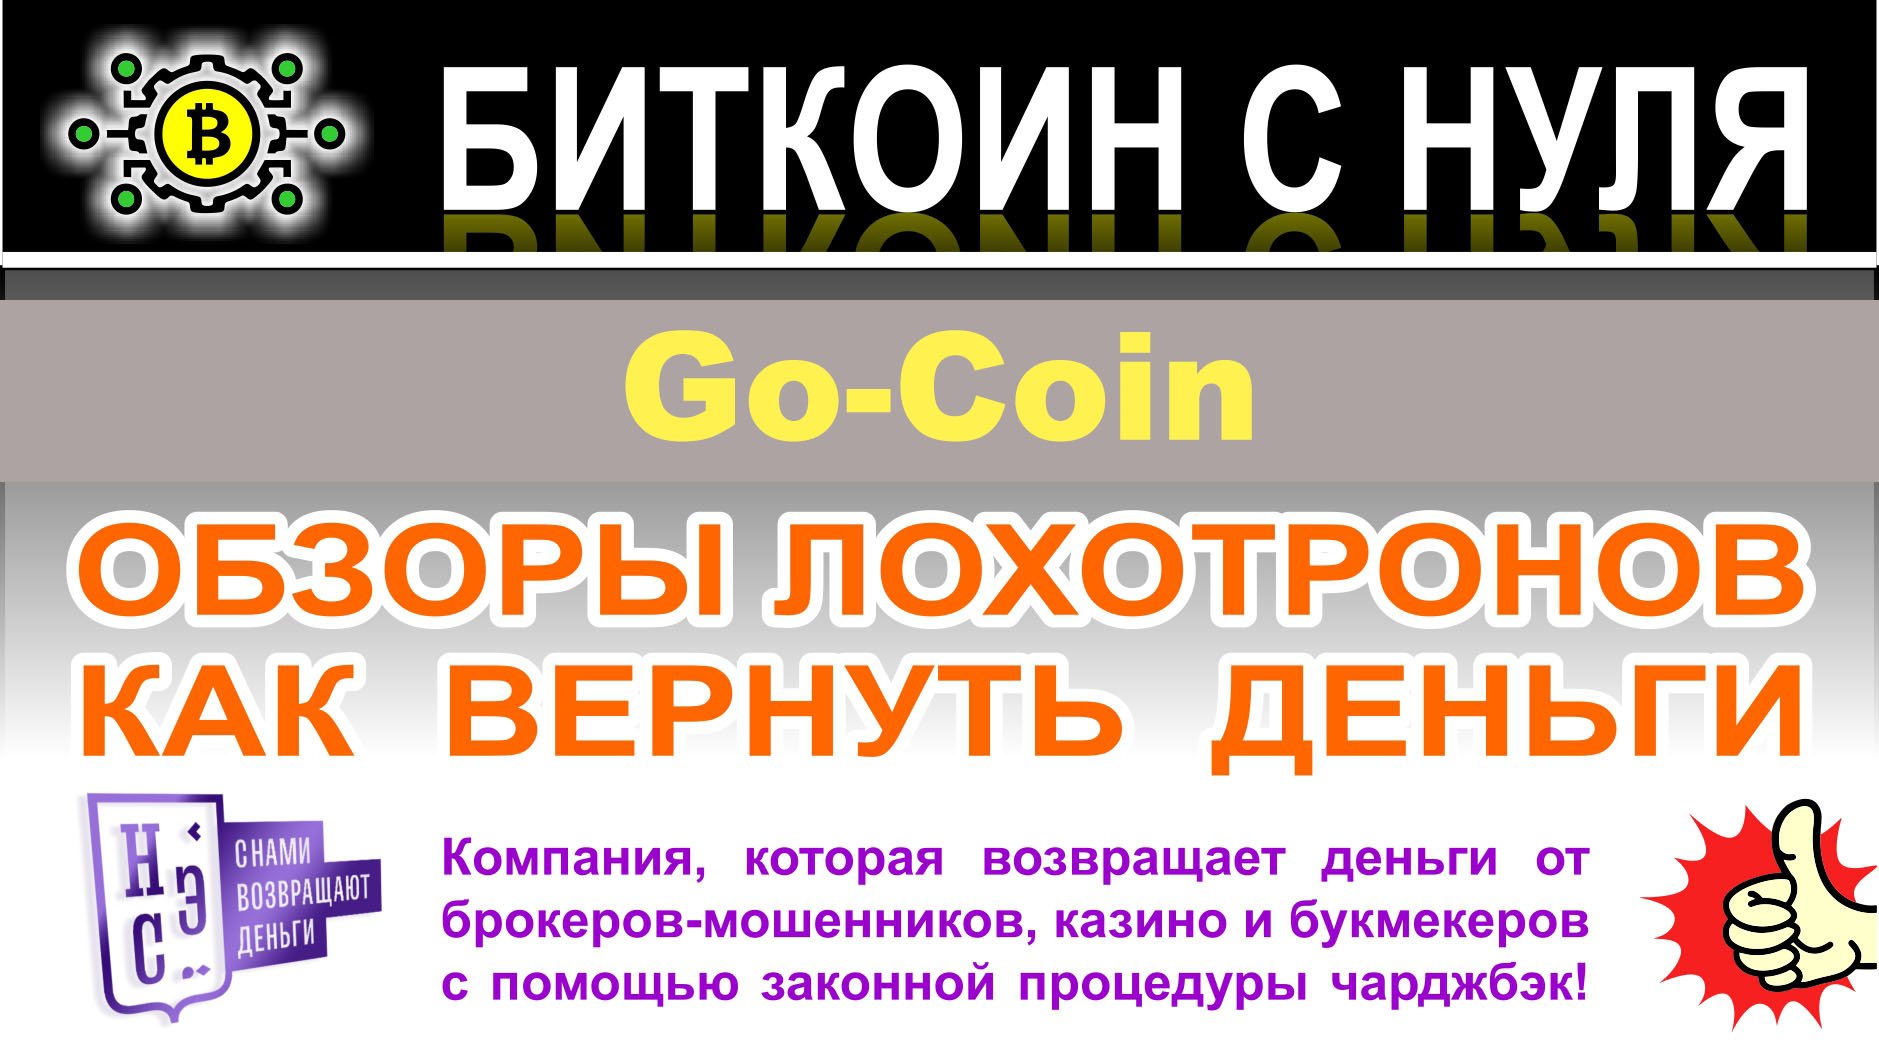 Go-Coin: стоит ли инвестировать в эту компанию? Скорее всего лохотрон. Отзывы. Как вернуть деньги.